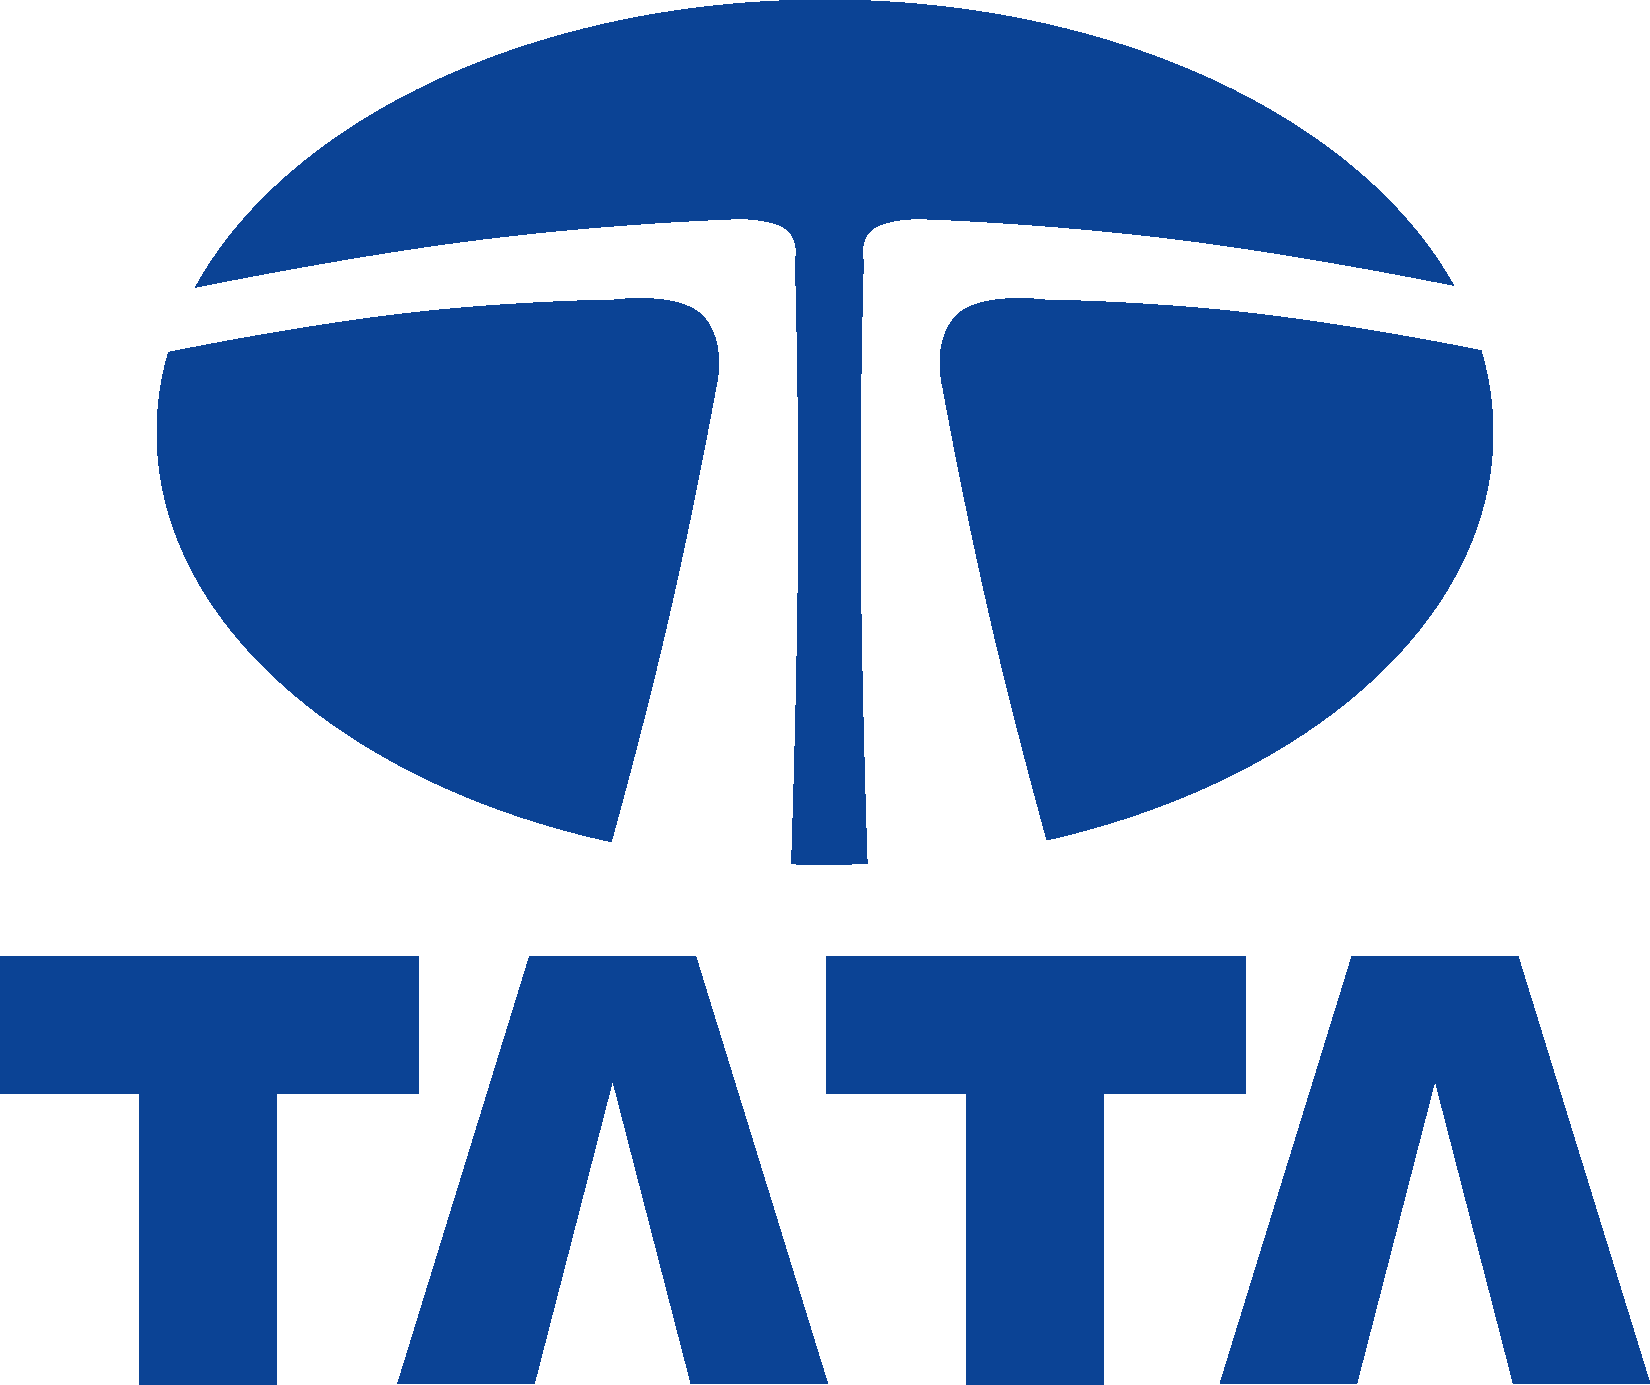 Tata Logo PNG - 177609